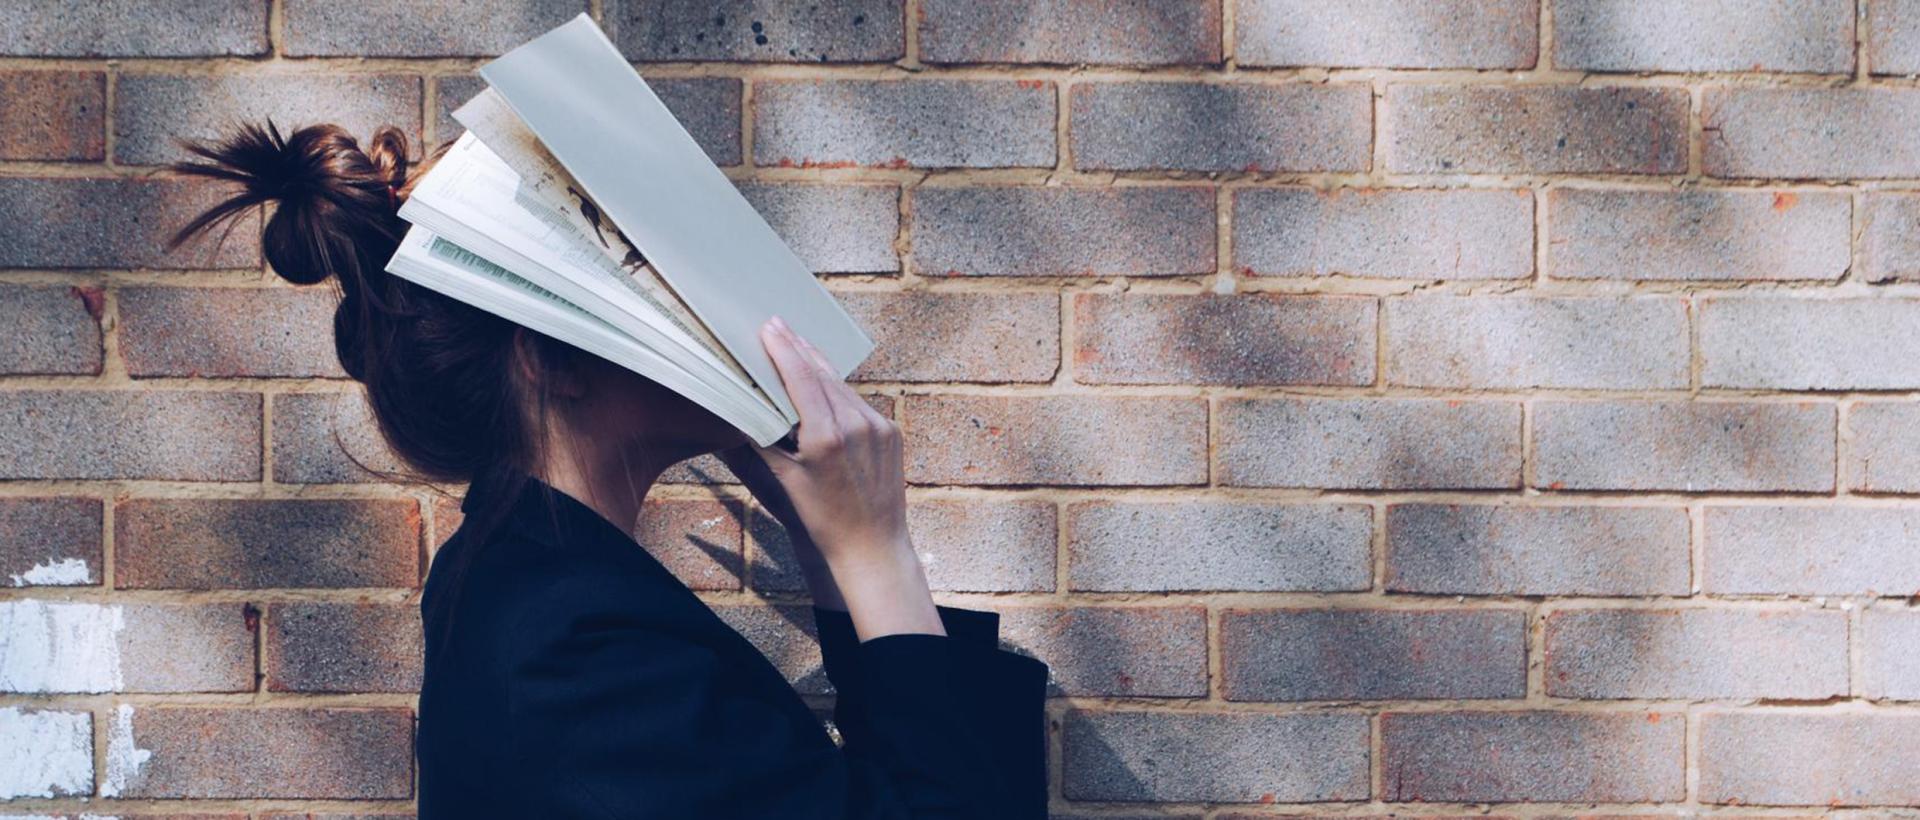 En person står med en bok öppnad rakt i ansiktet.